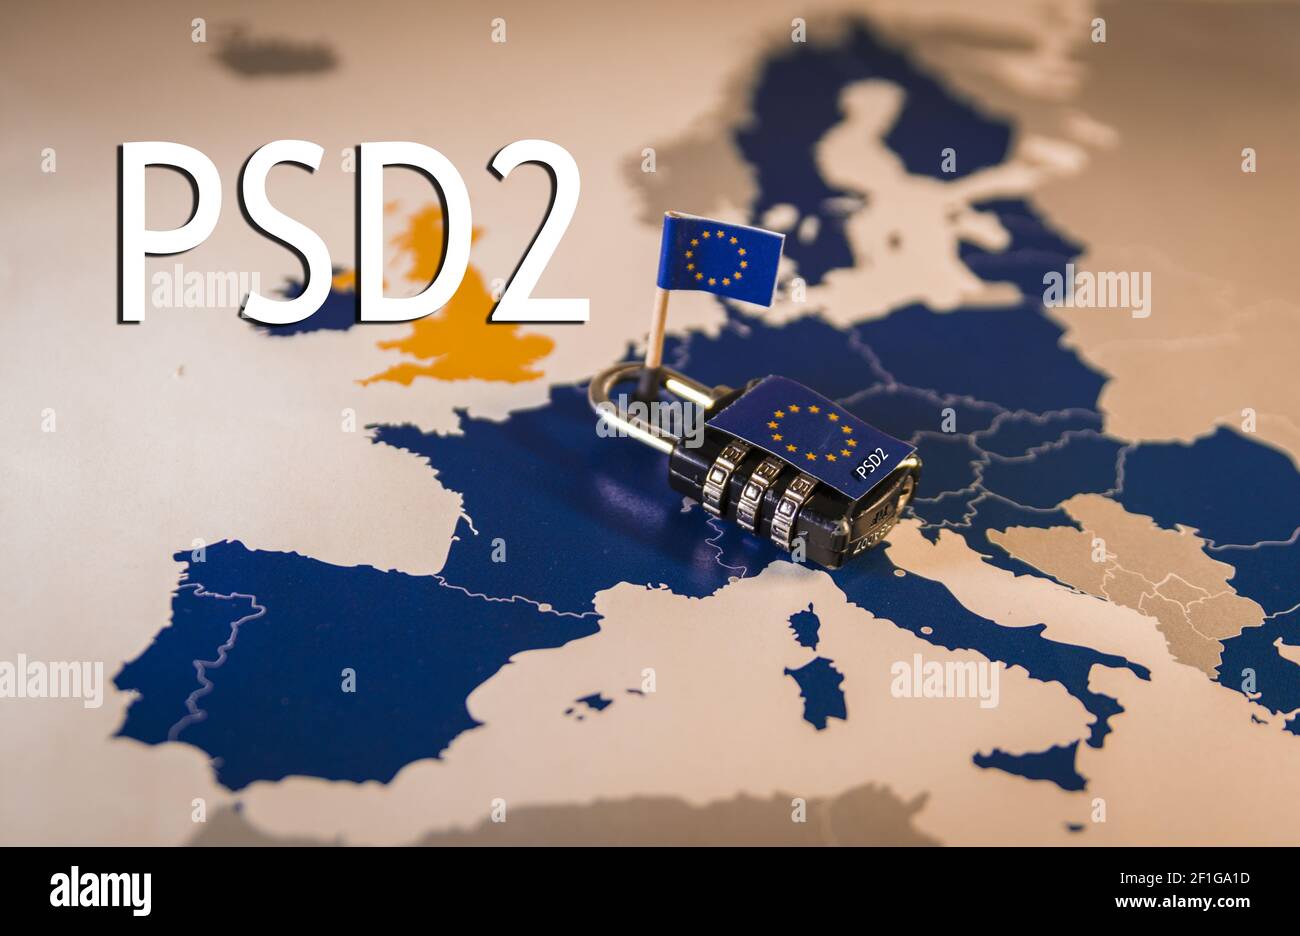 Padlock over EU map, PSD2 metaphor Stock Photo